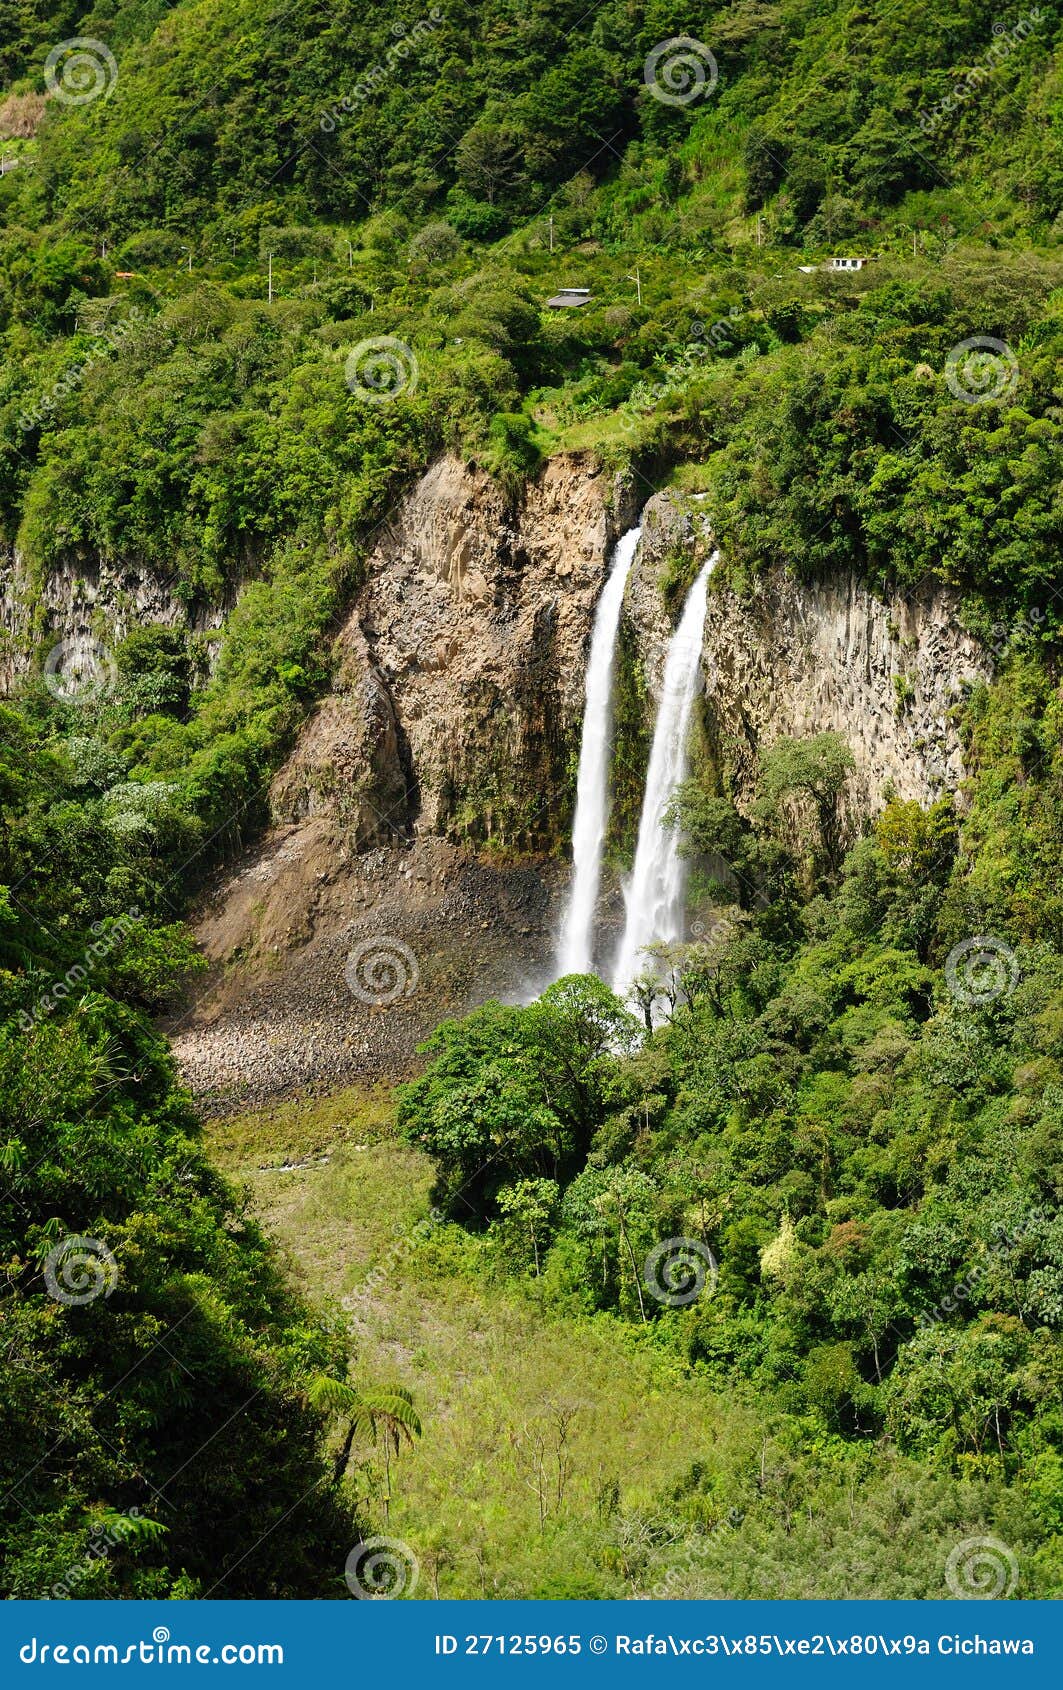 ecuador, banos waterfall